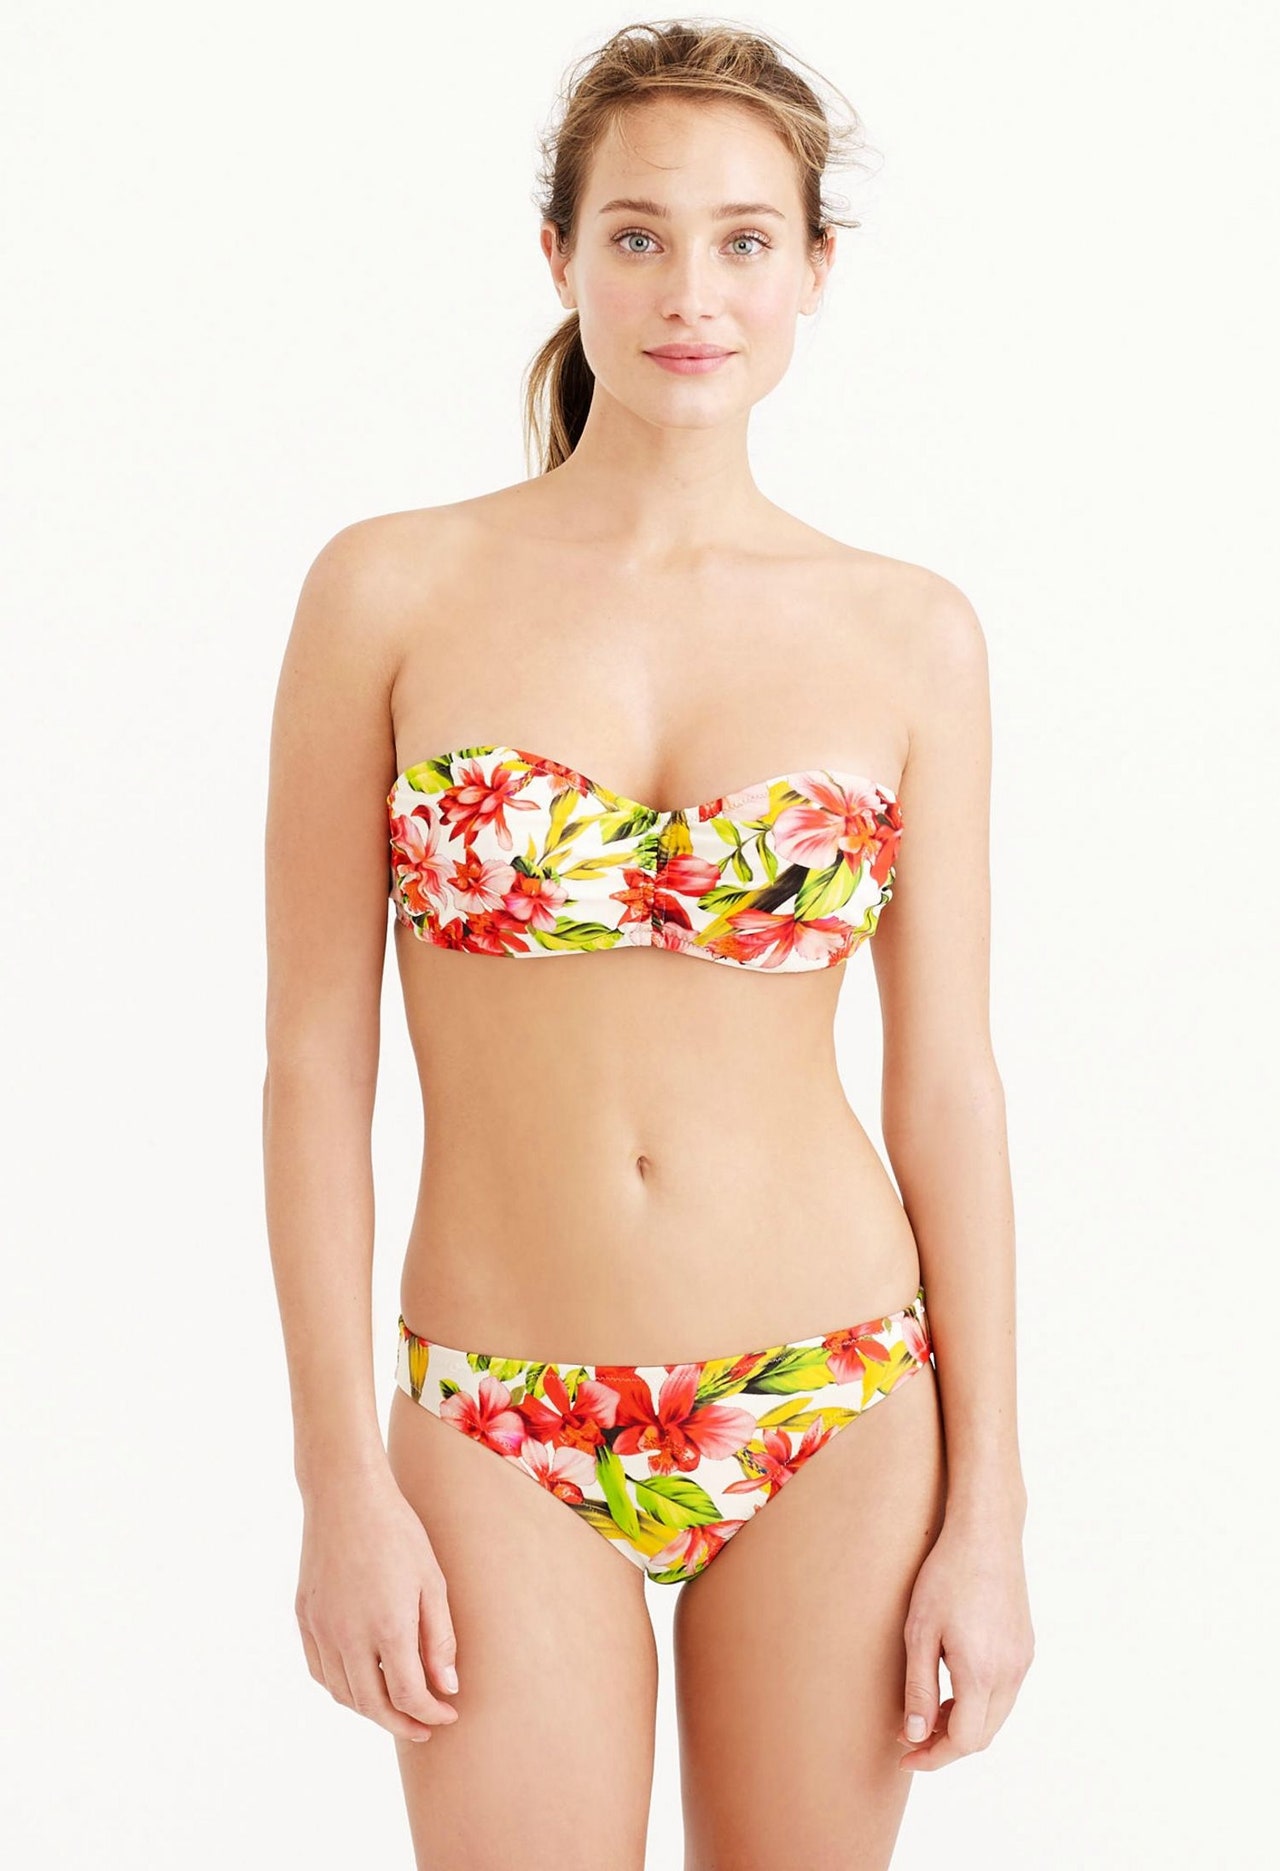 best of Bikini bathingsuits Size 34d underwire